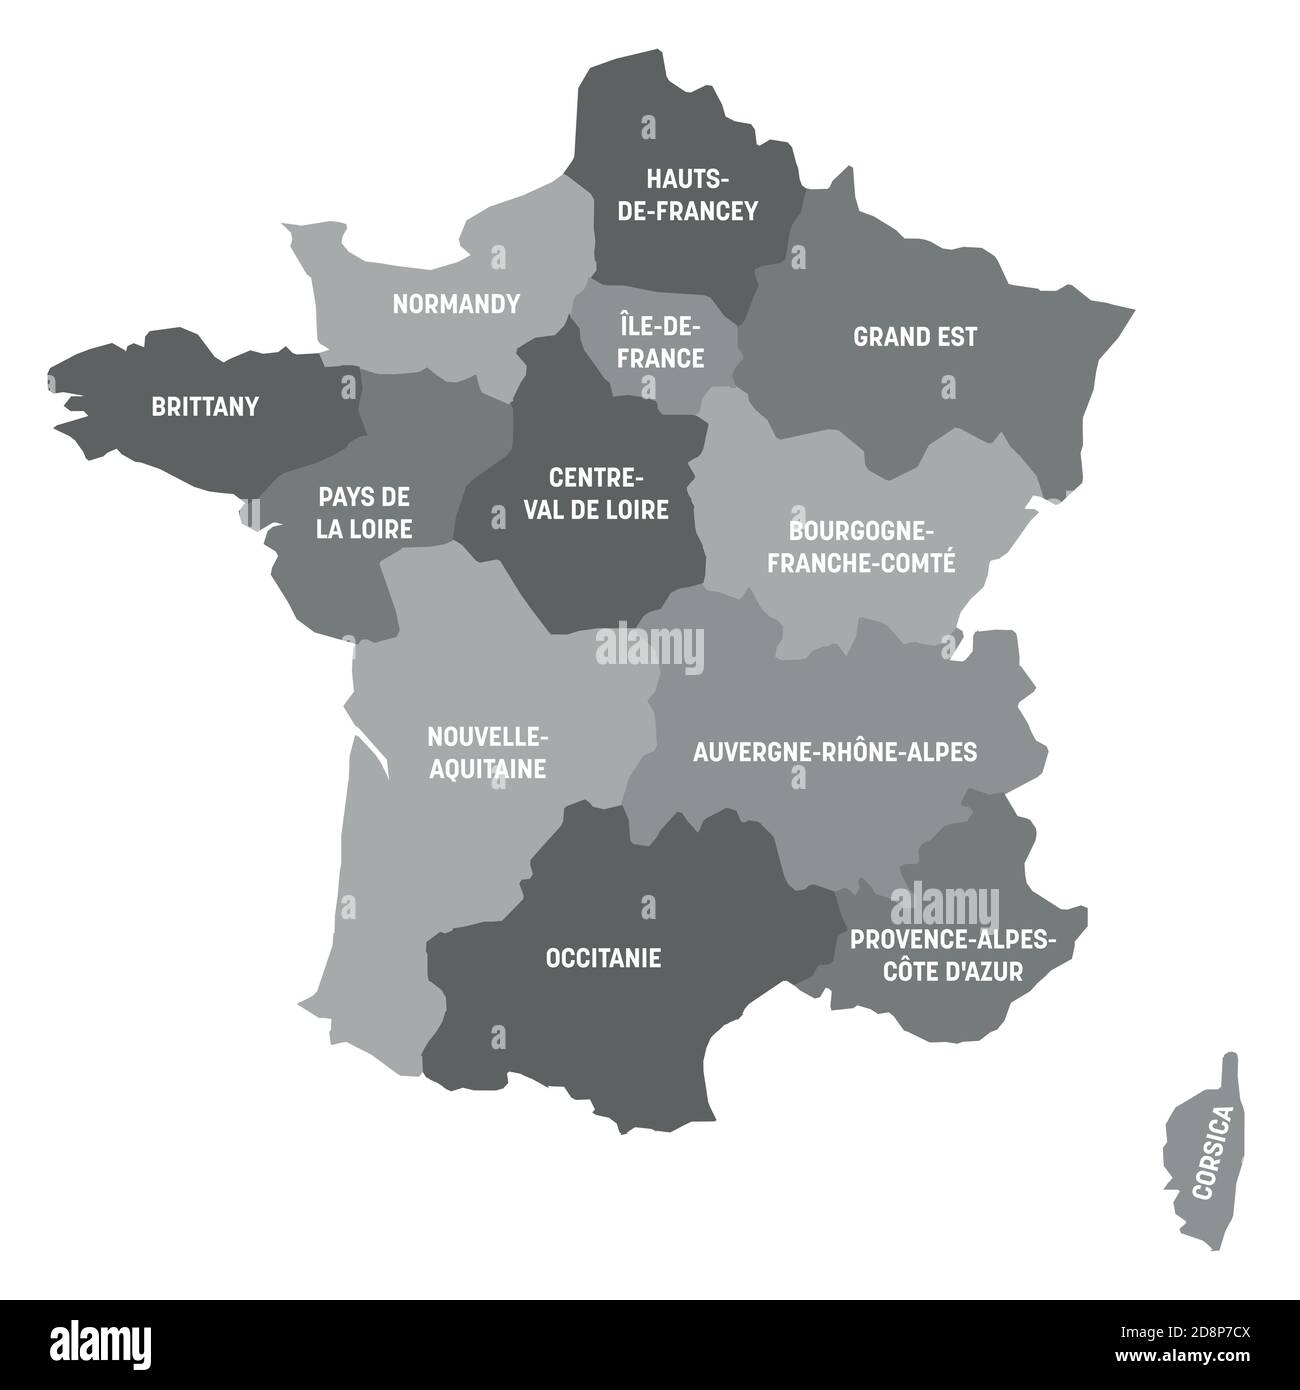 Graue politische Landkarte von Frankreich. Administrative Divisionen - Metropolregionen. Einfache flache Vektorkarte mit Beschriftungen. Stock Vektor